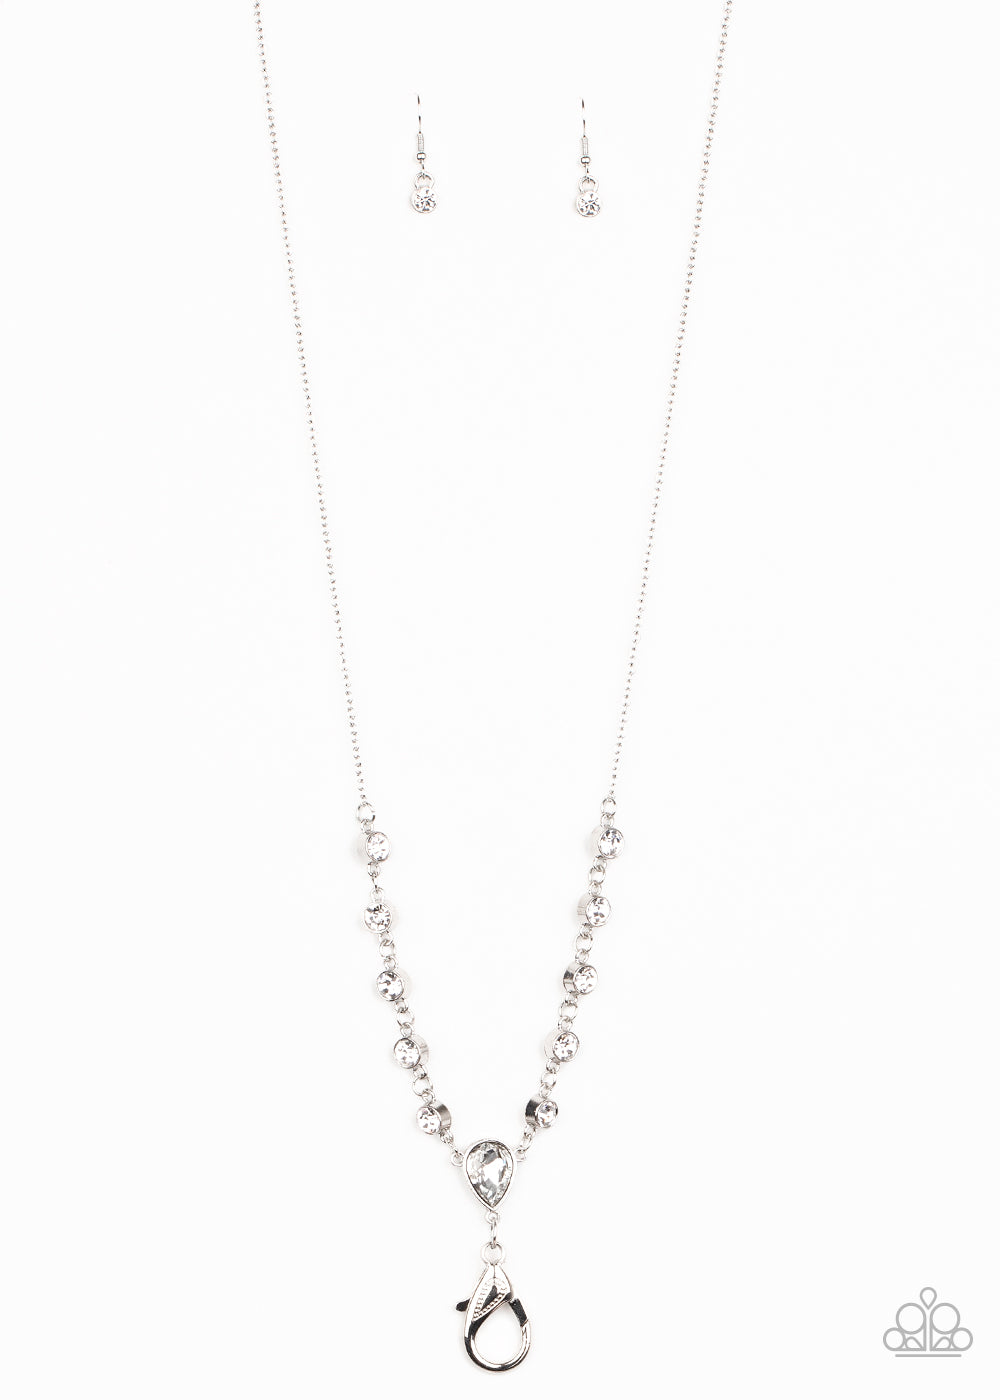 Unfathomable Fierceness - White lanyard necklace 1575